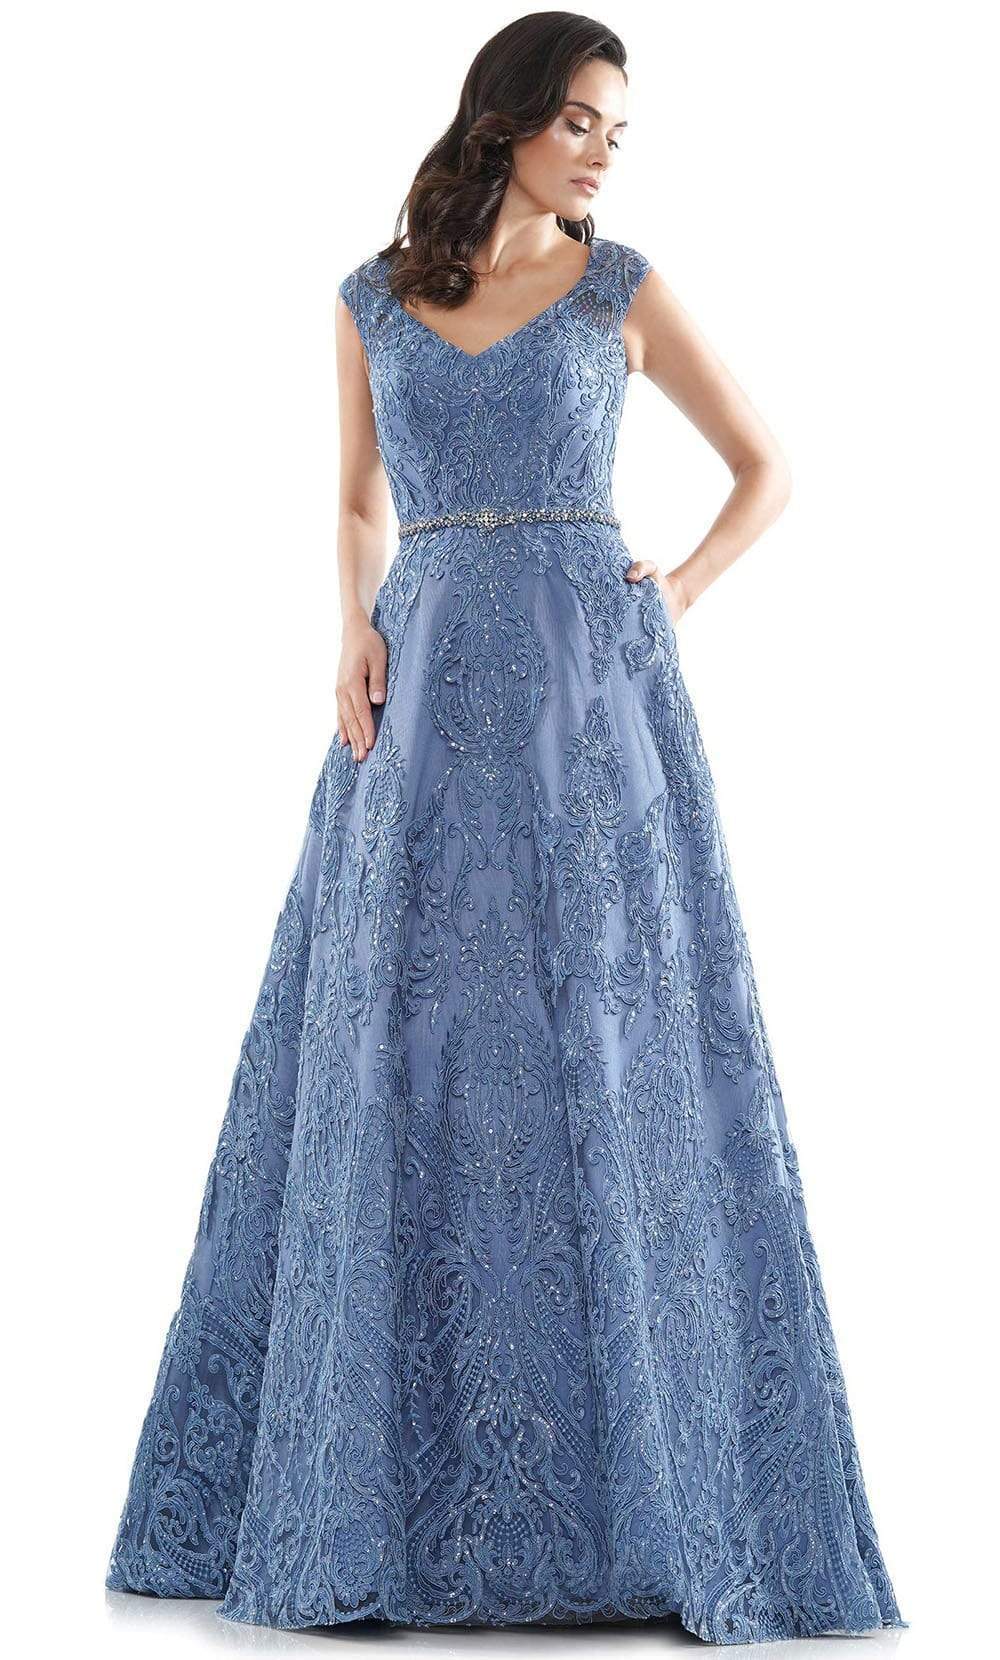 Marsoni by Colors - MV1092 Embellished V Neck A-Line Dress Mother of the Bride Dresses 4 / Slate Blue